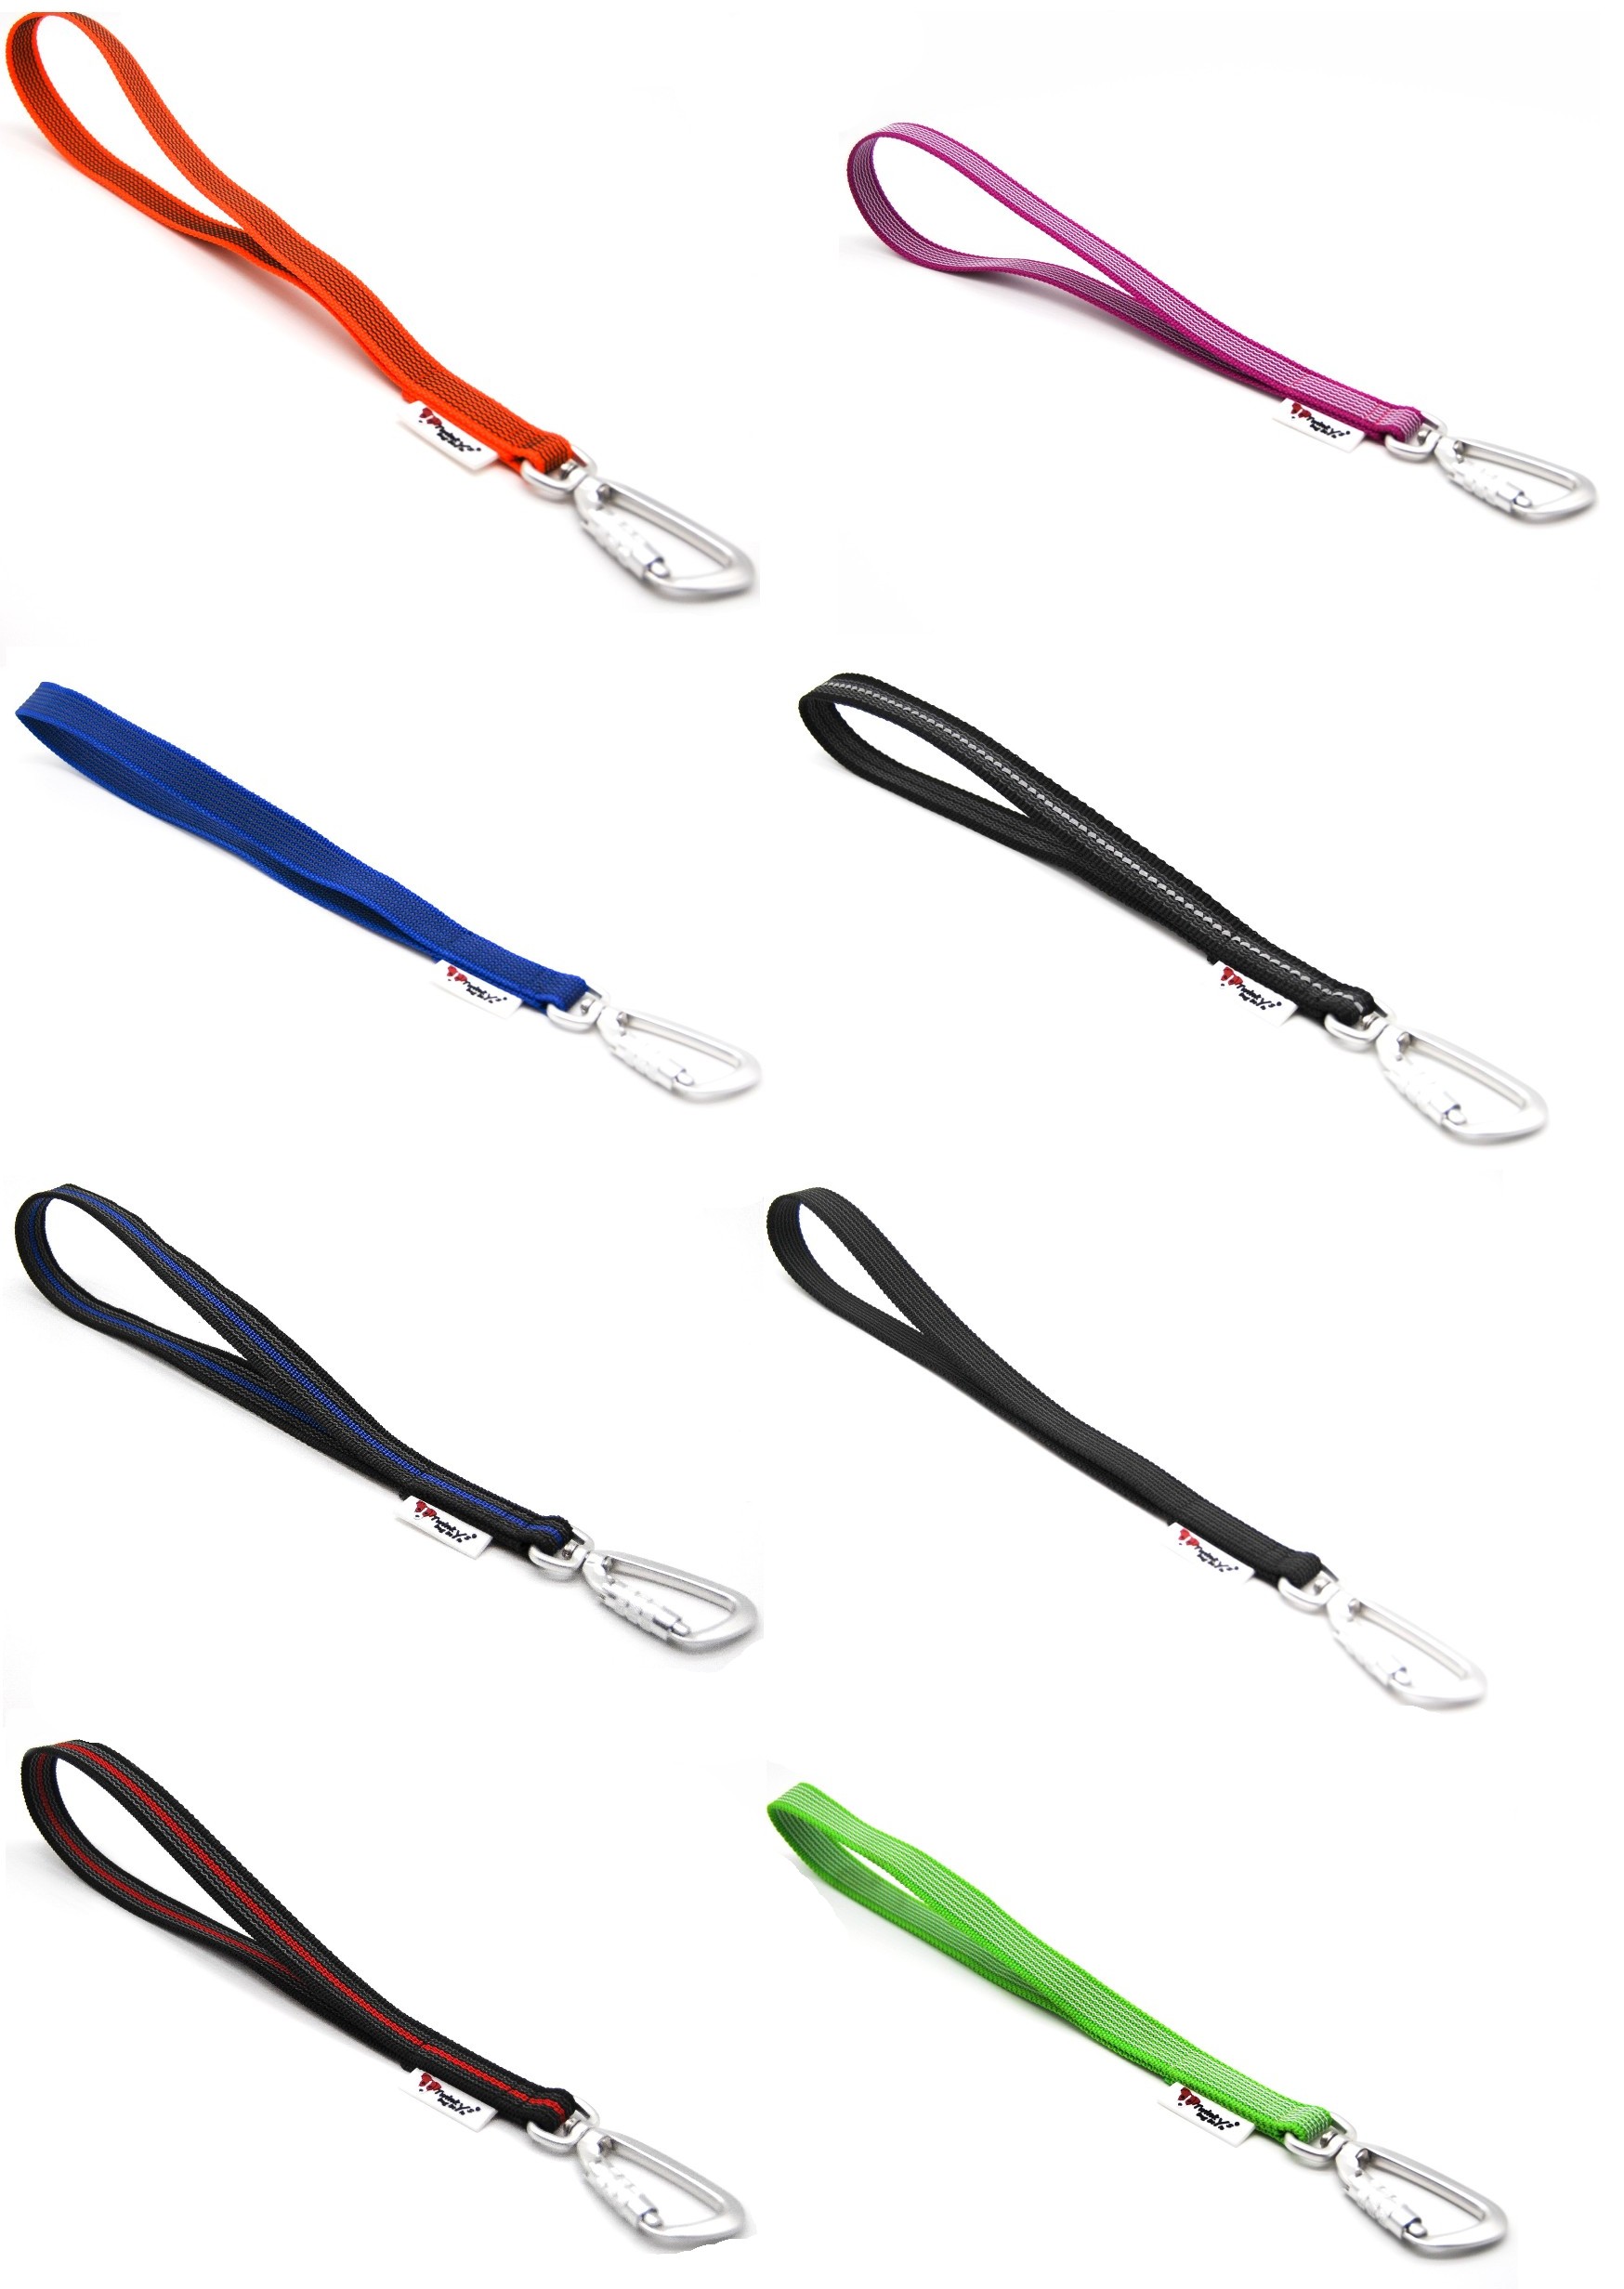 Kurzführer Hundeleine Handschlaufe mit Sicherheitskarabiner gummiert 20 mm breit 35 cm lang verschiedene Farben